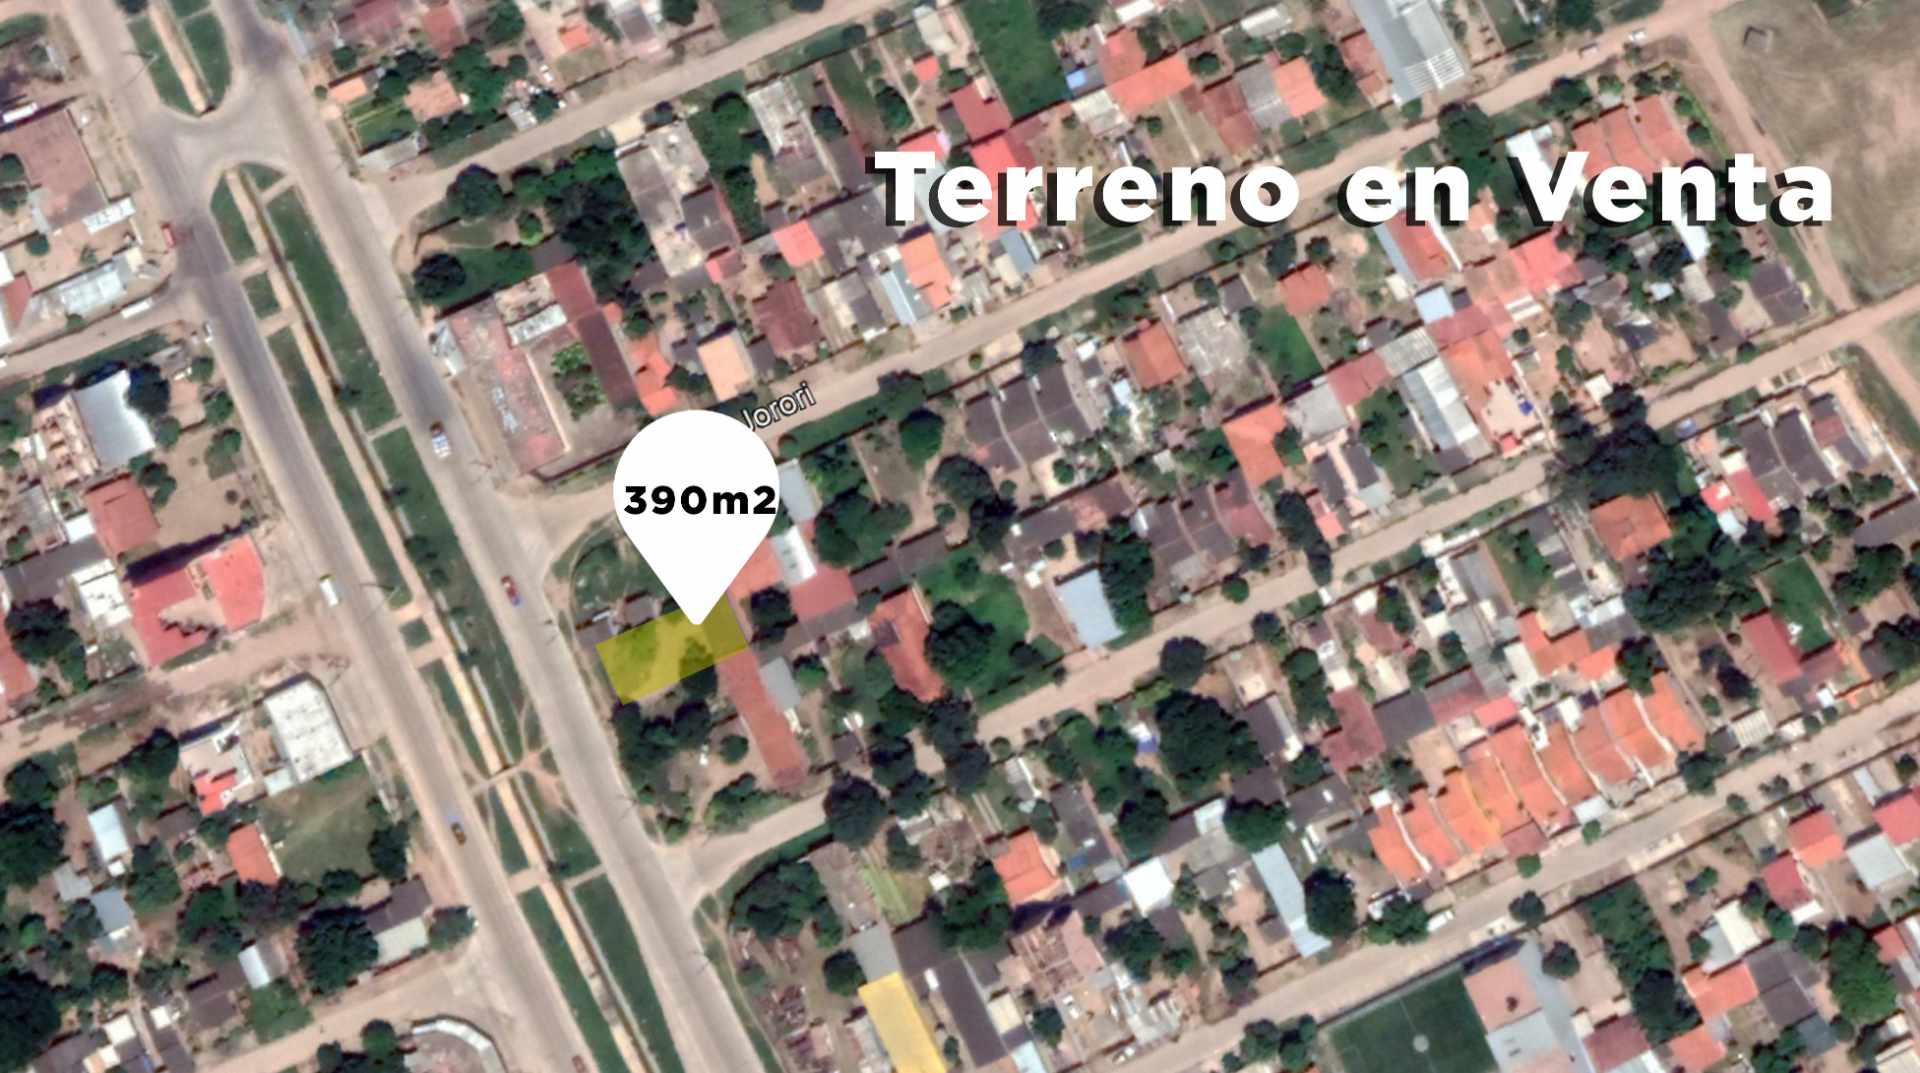 Terreno en VentaTerrenos en venta, Urb. El Dorado 2 Foto 2